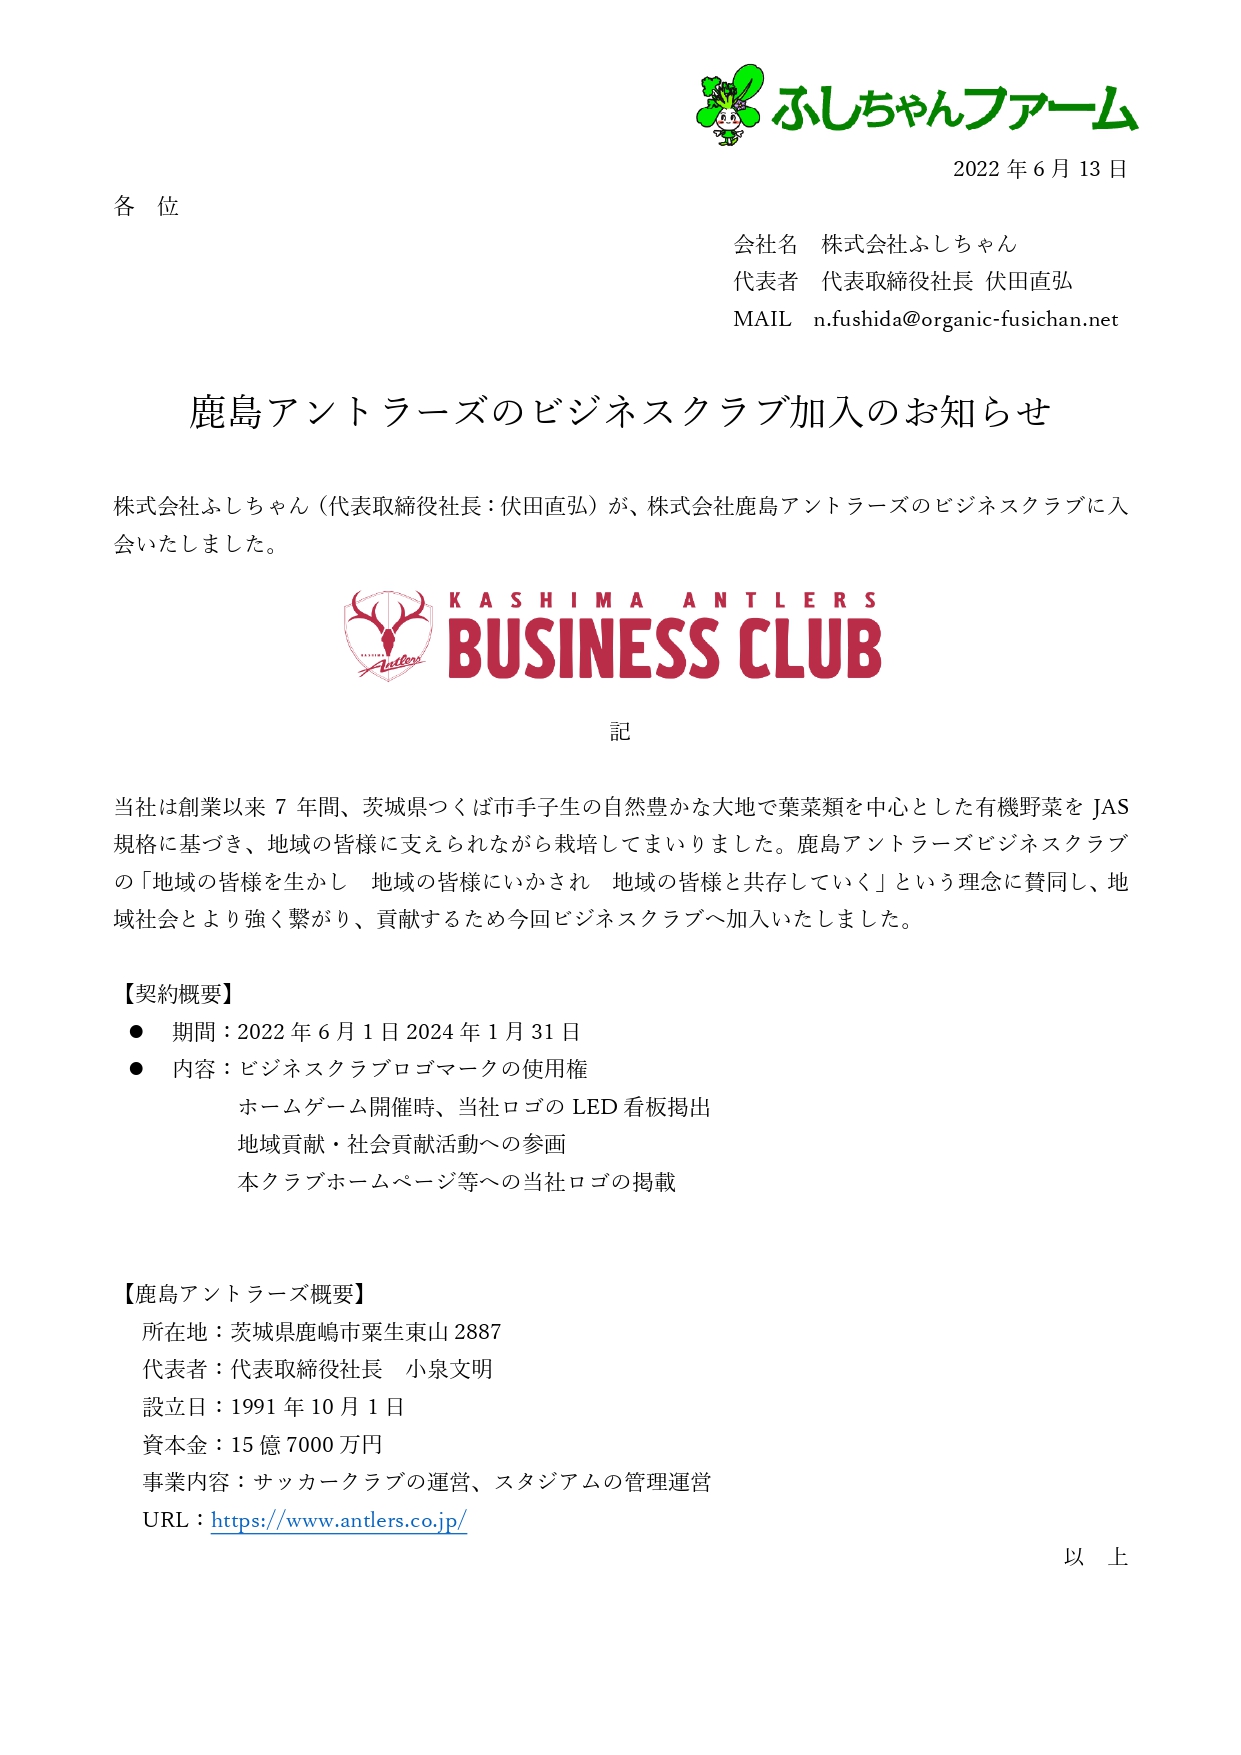 鹿島アントラーズのビジネスクラブ加入のお知らせ ふしちゃんファーム